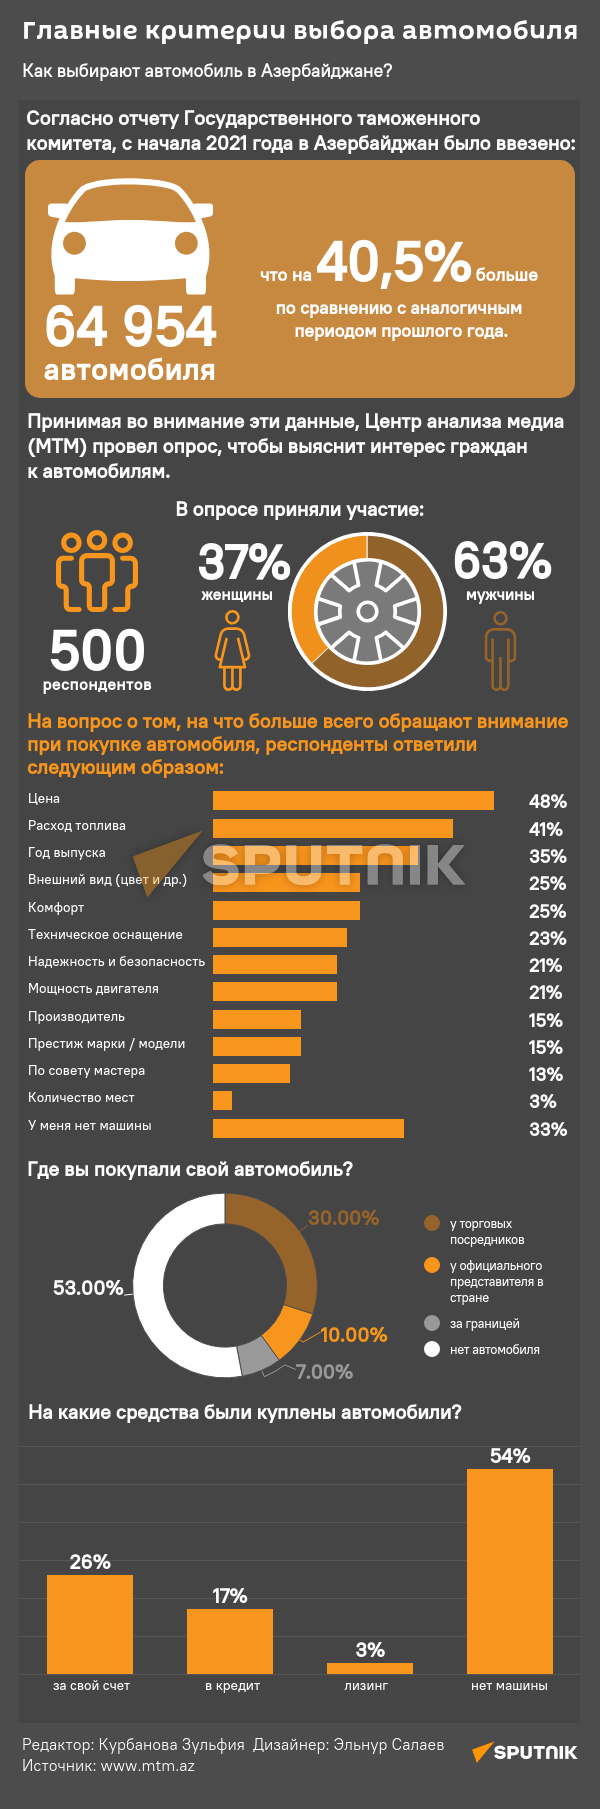 Инфографика: Главные критерии выбора автомобиля - Sputnik Азербайджан